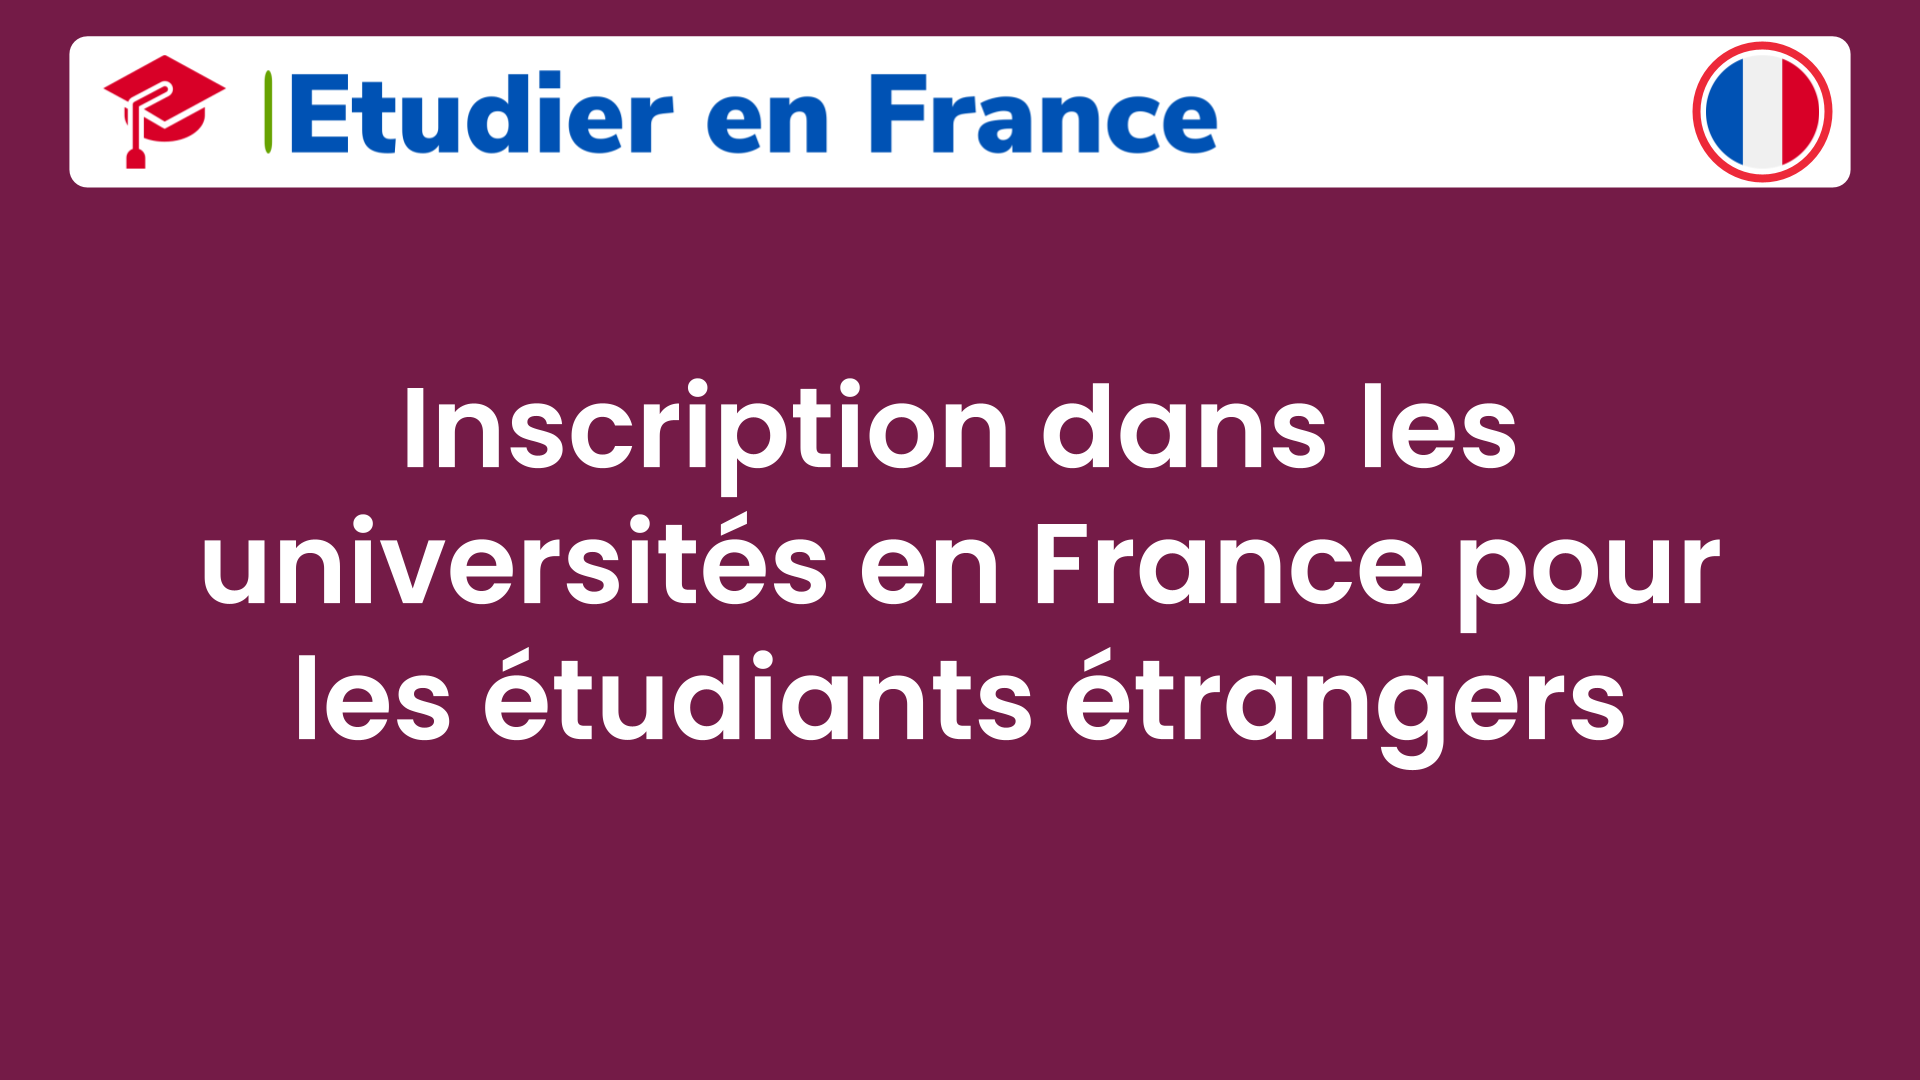 Inscription dans les universités en France pour les étudiants étrangers